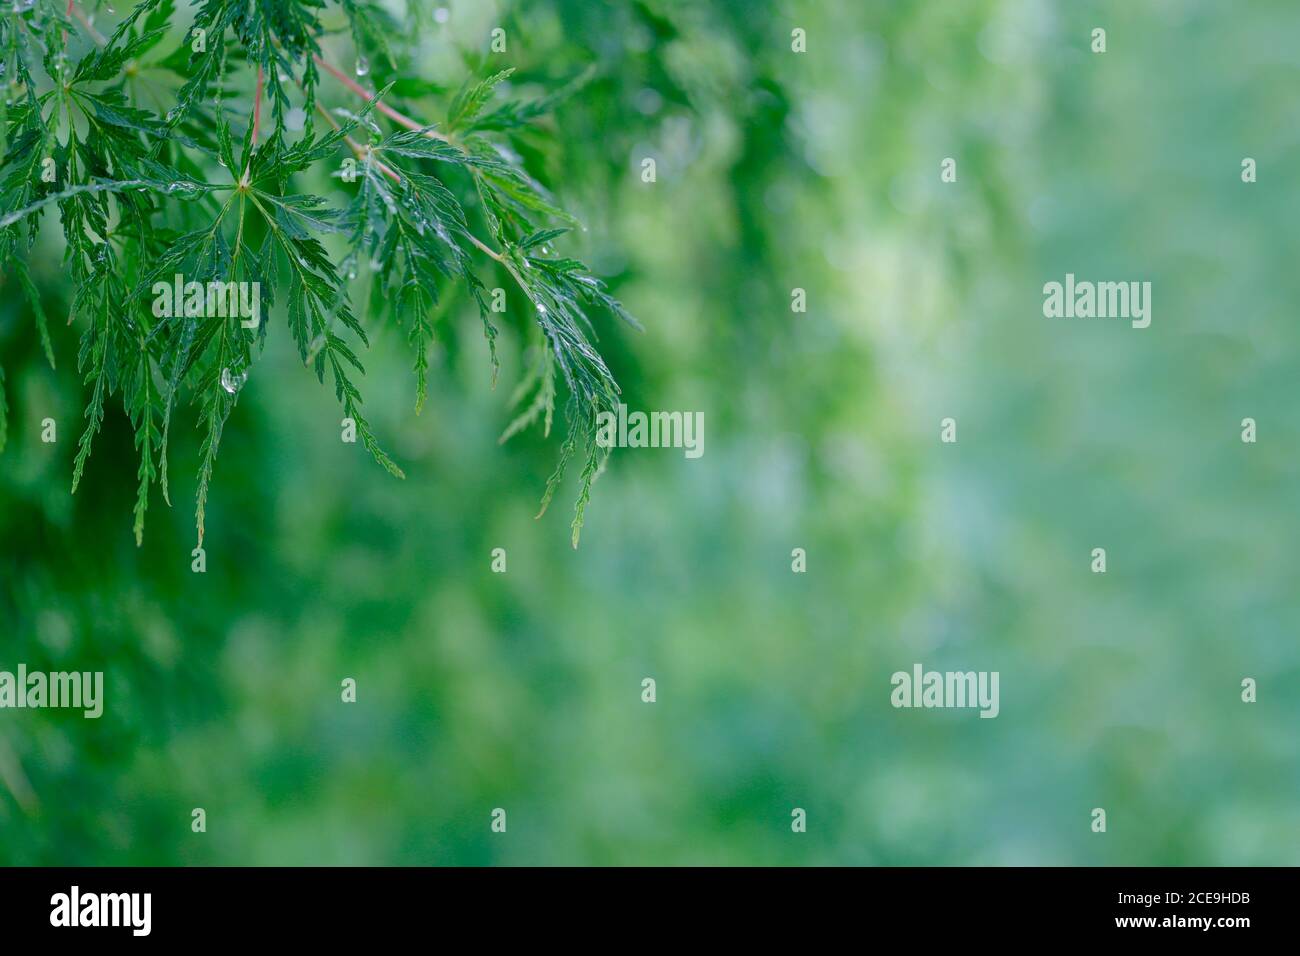 ein AST mit grünen Blätter vom Japanischen Ahorn, Acer palmatum, mit Regentropfen Foto Stock